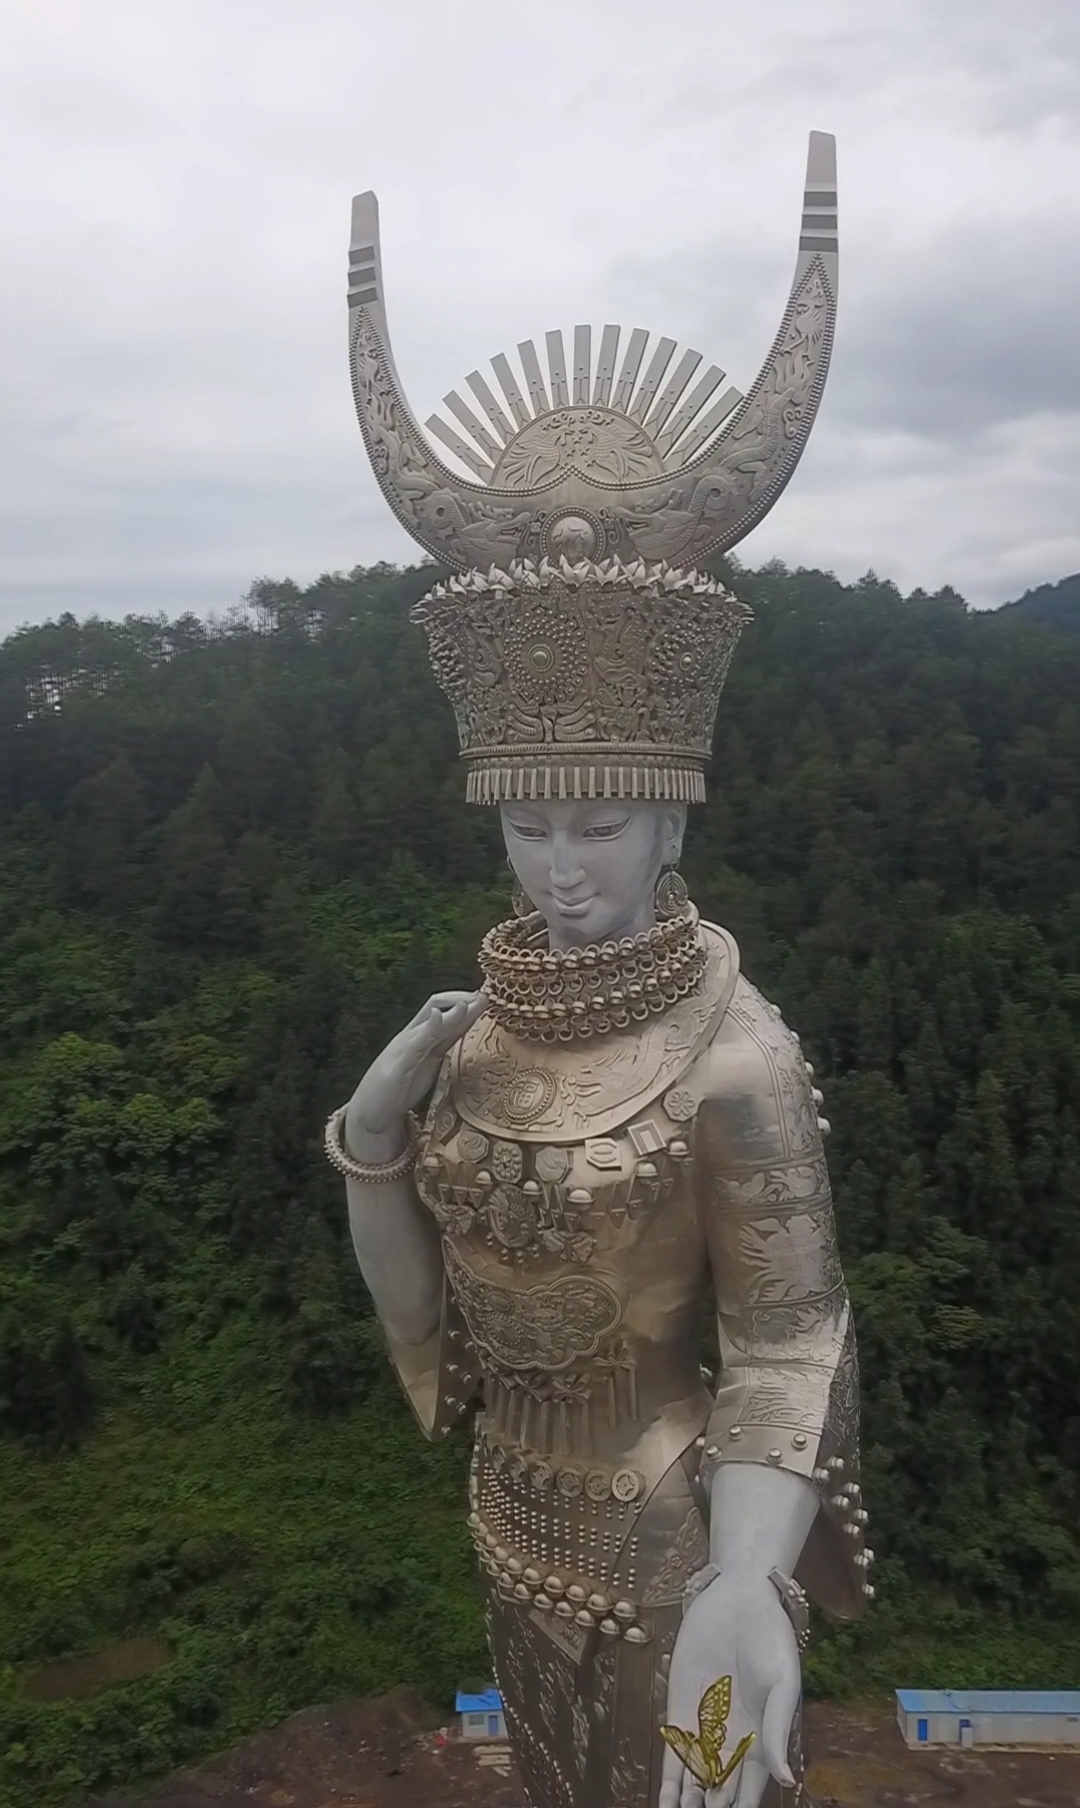 苗族女神仰阿莎雕像雕像高88米亭亭玉立落在他的故乡贵州剑河